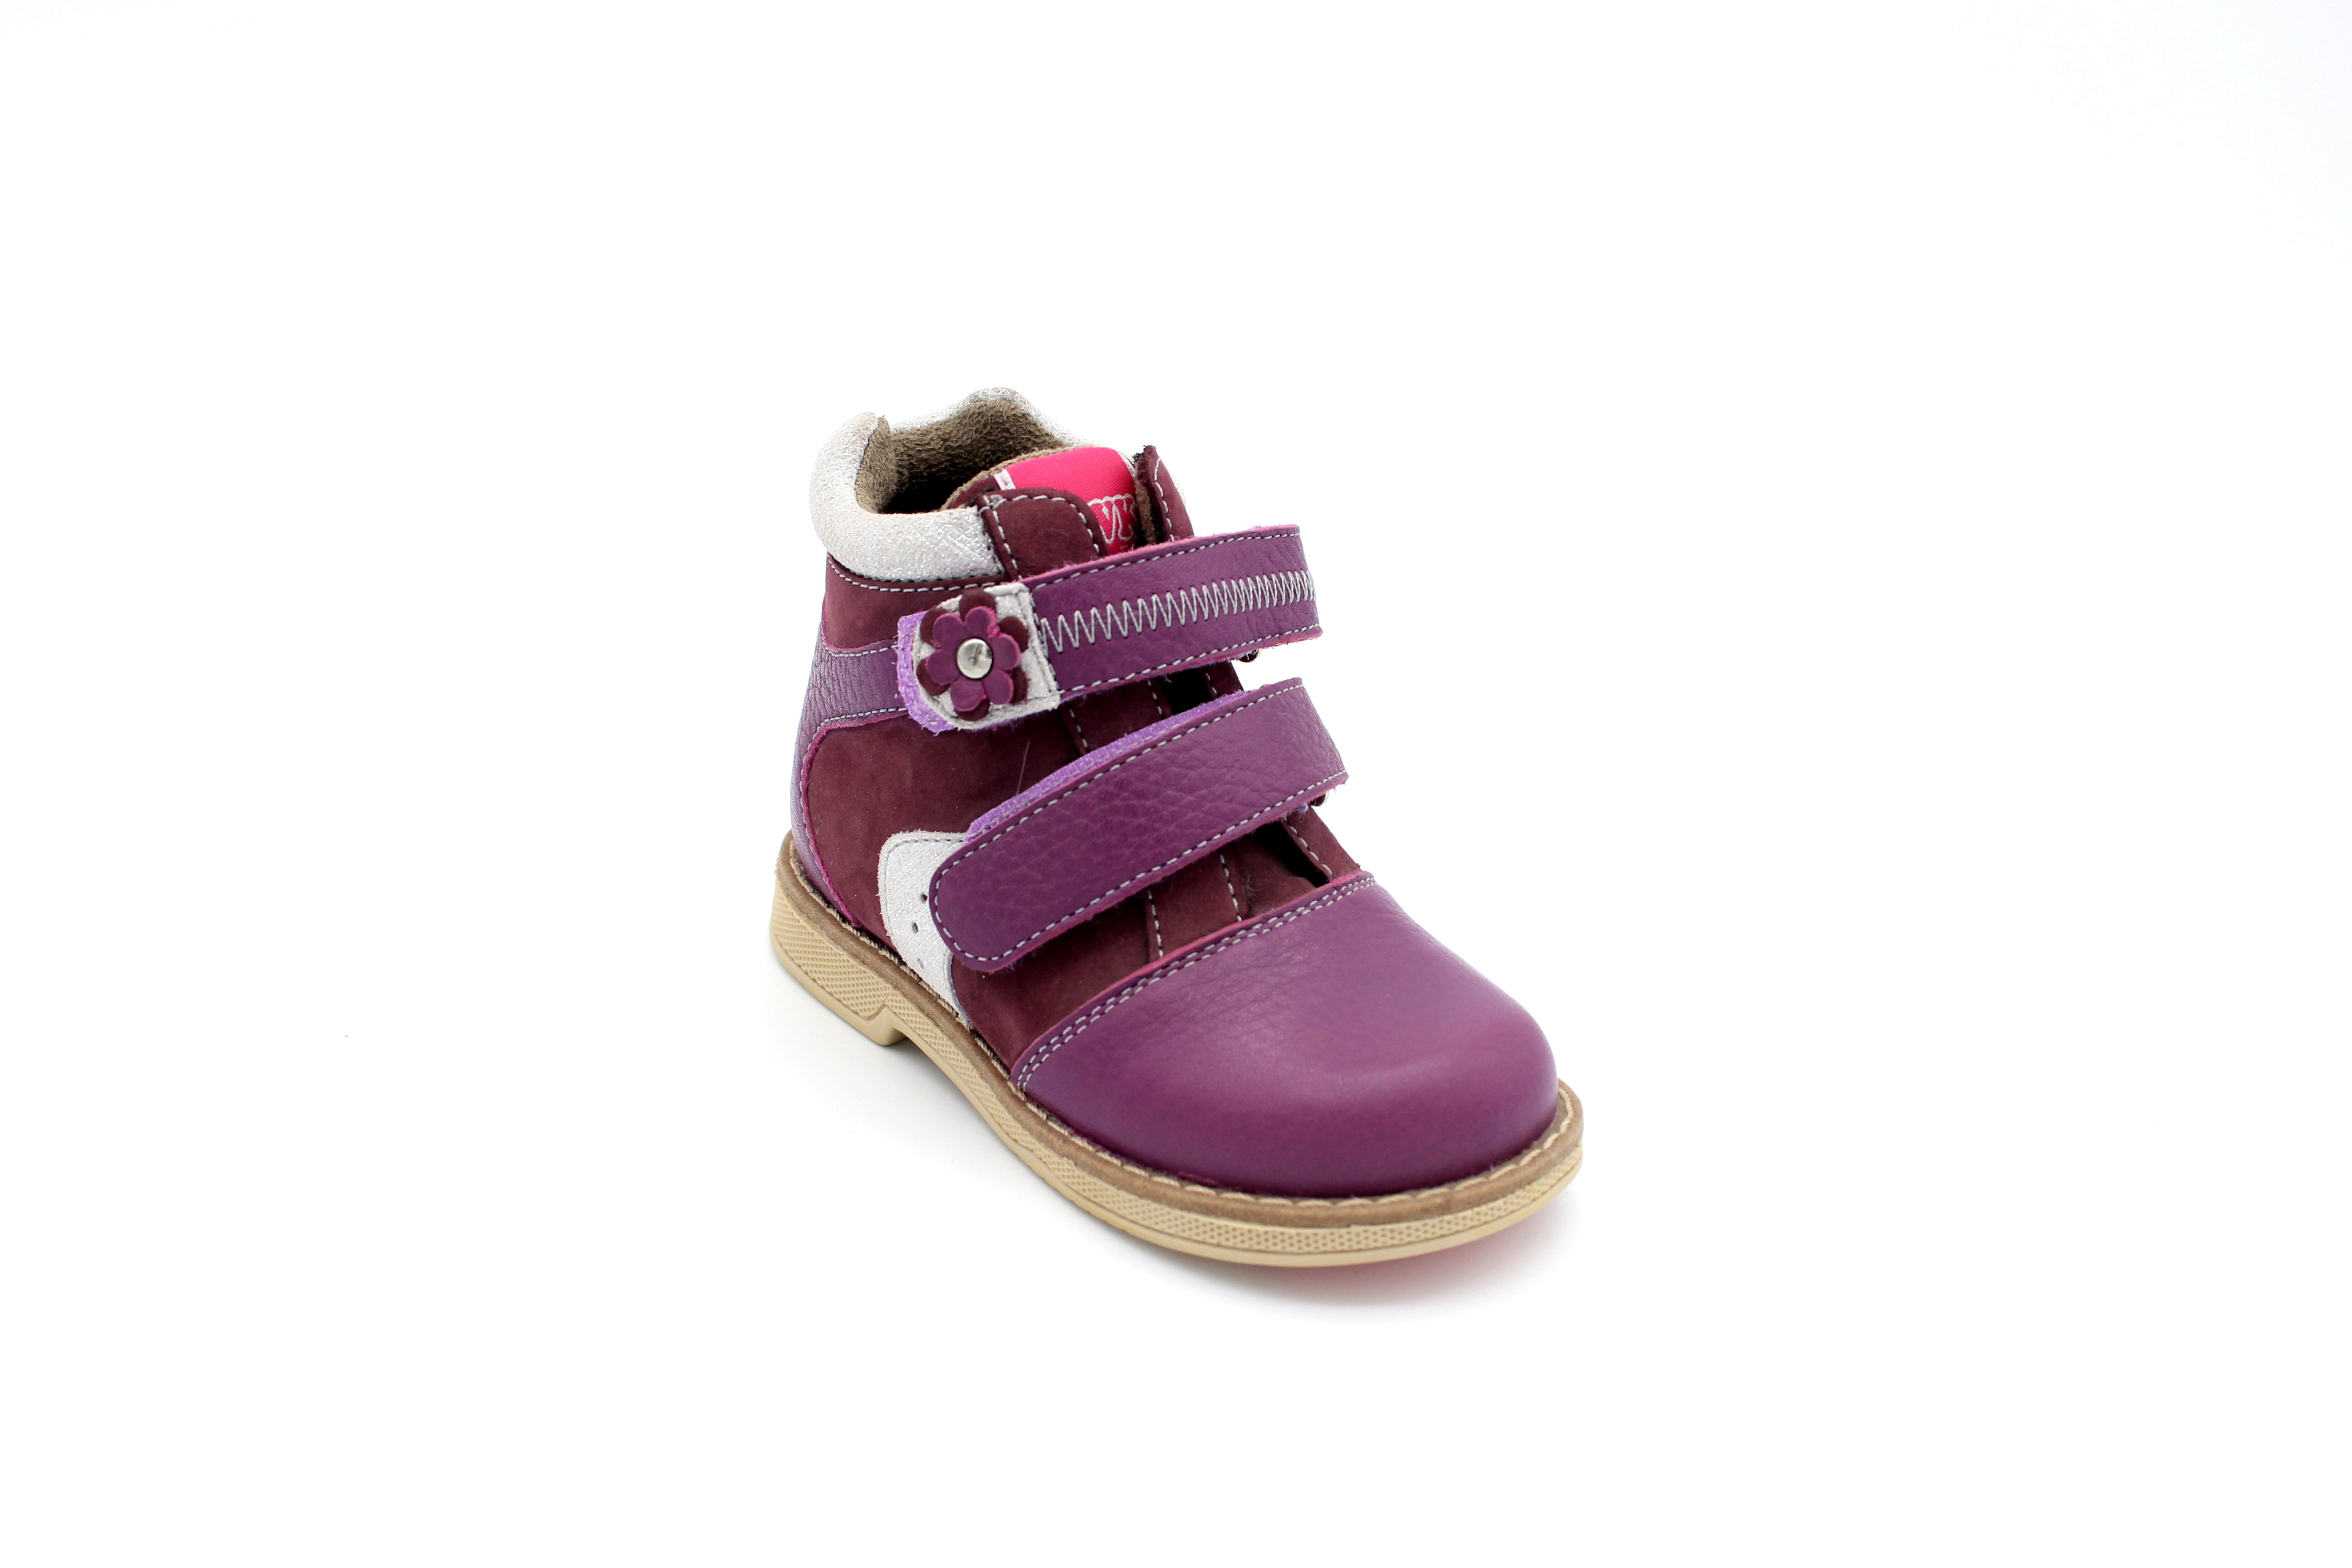 Ботинки обувь ортопедическая детская на девочку натуральная кожа TW 401